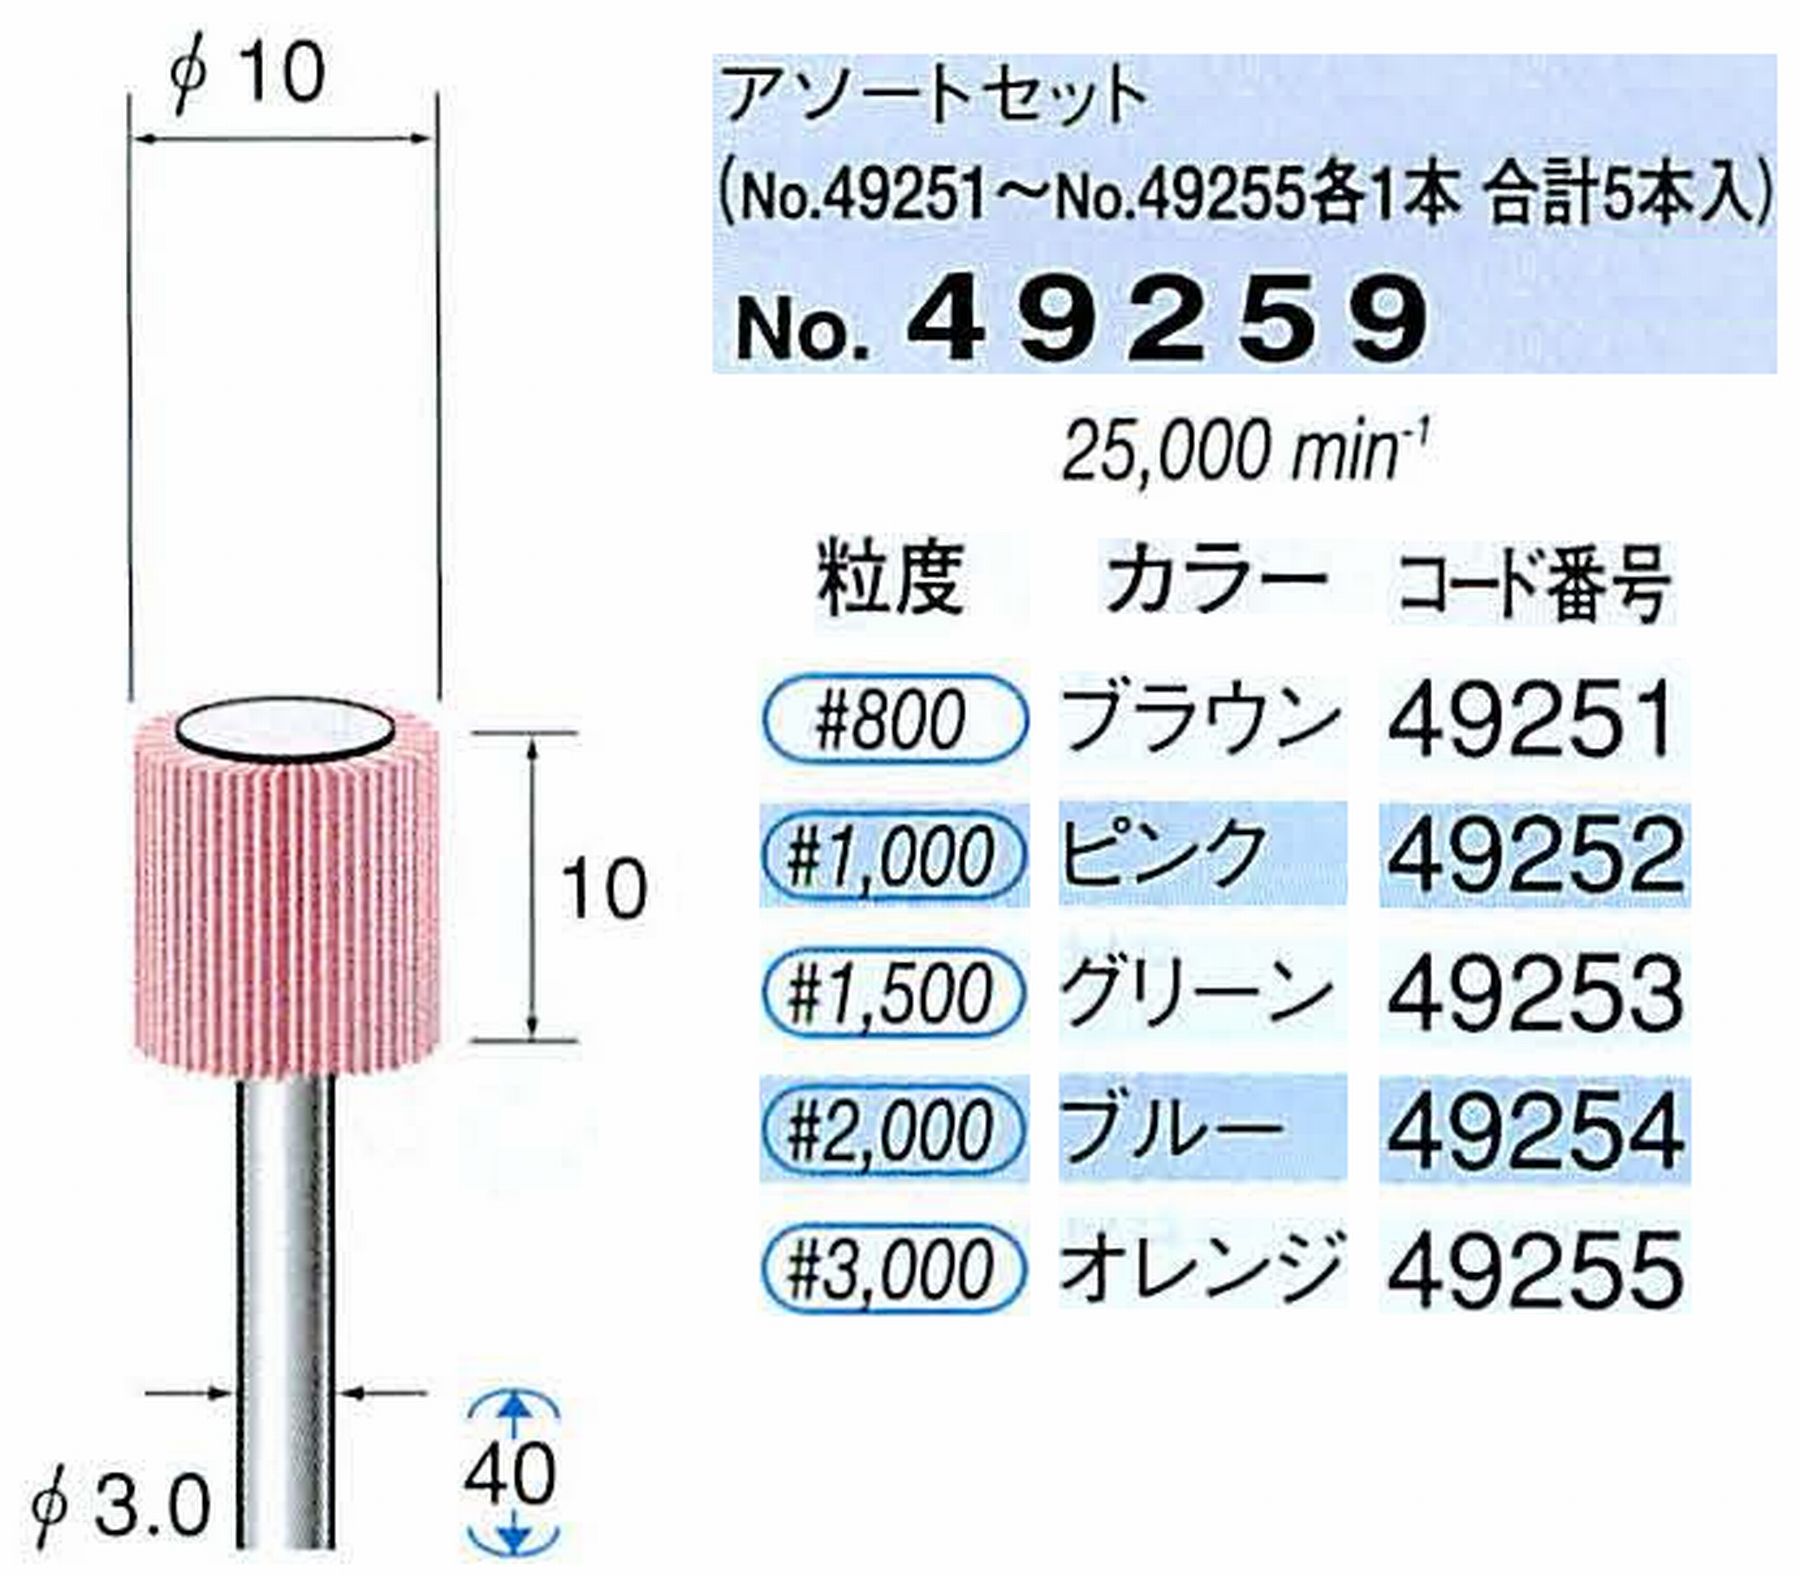 ナカニシ/NAKANISHI ファイン フラップサンダーアソートセット 軸径(シャンク)φ3.0mm 49259